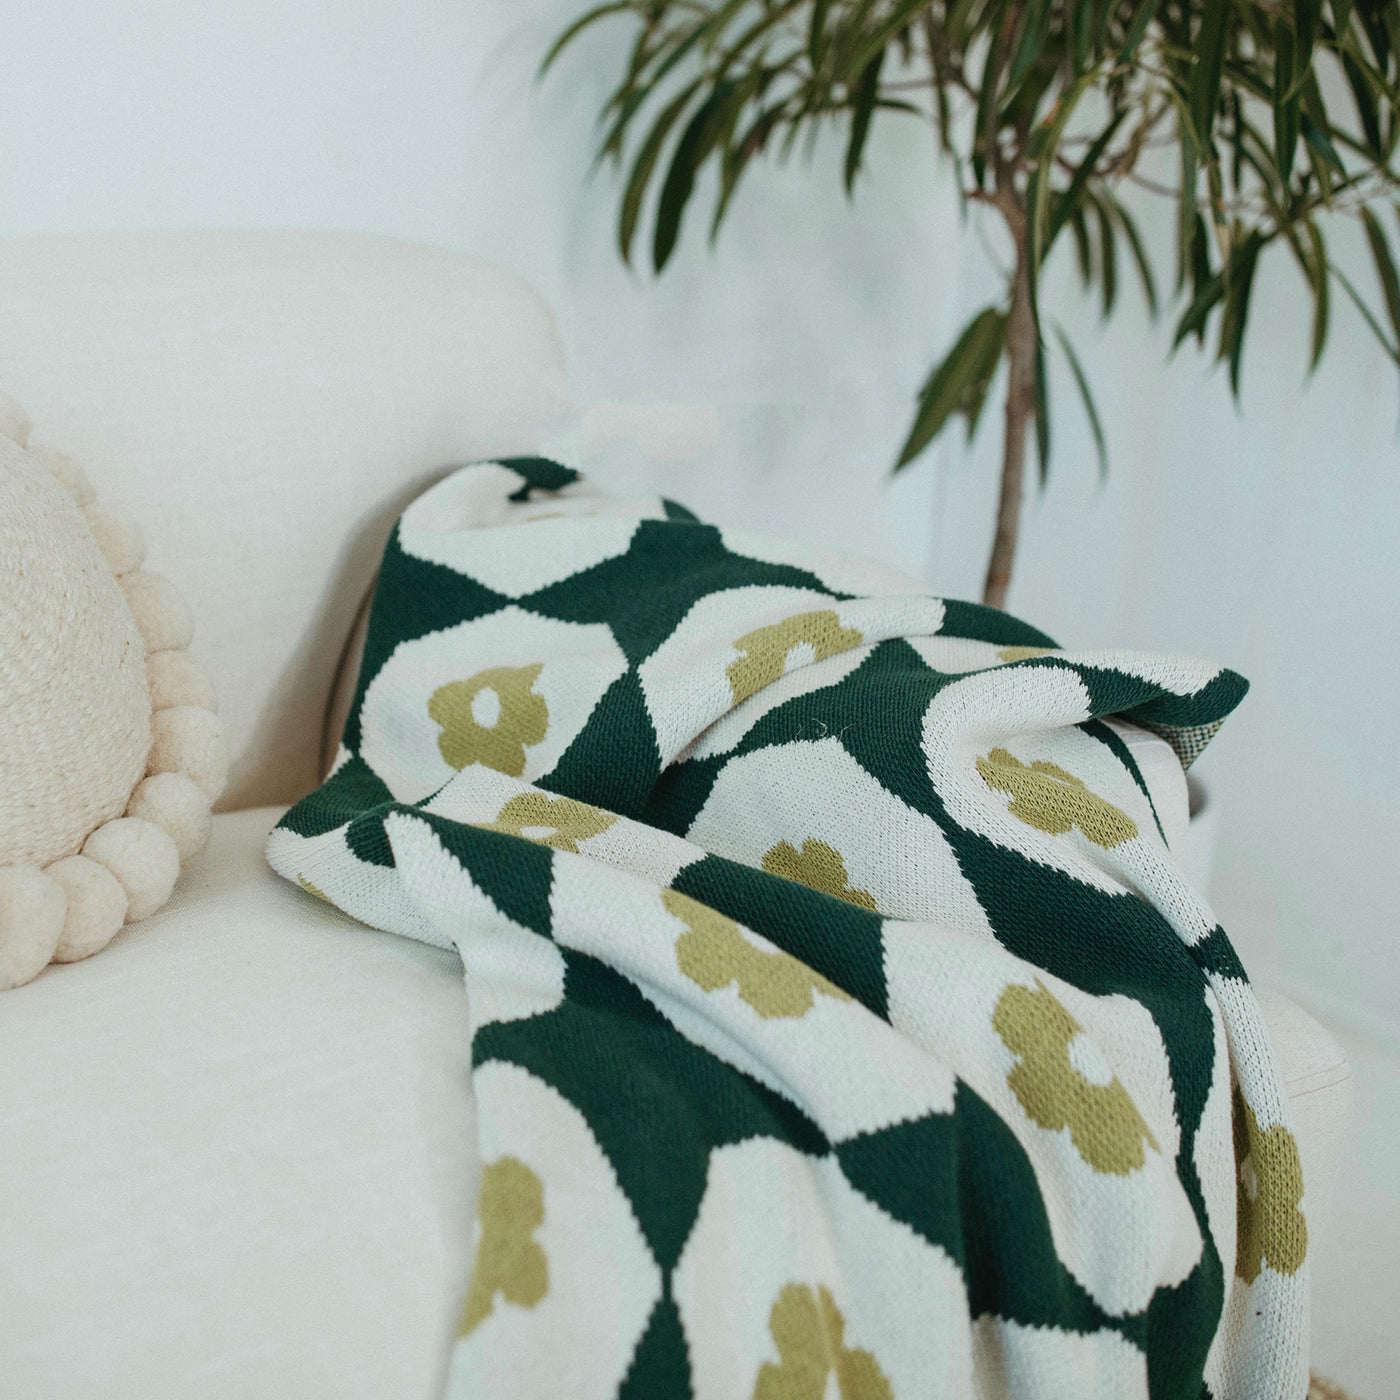 Green Throw Blanket on a White Sofa